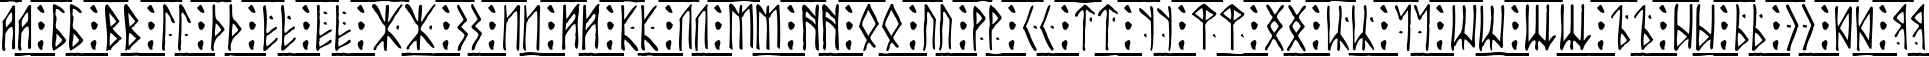 Пример написания русского алфавита шрифтом Runic Alt